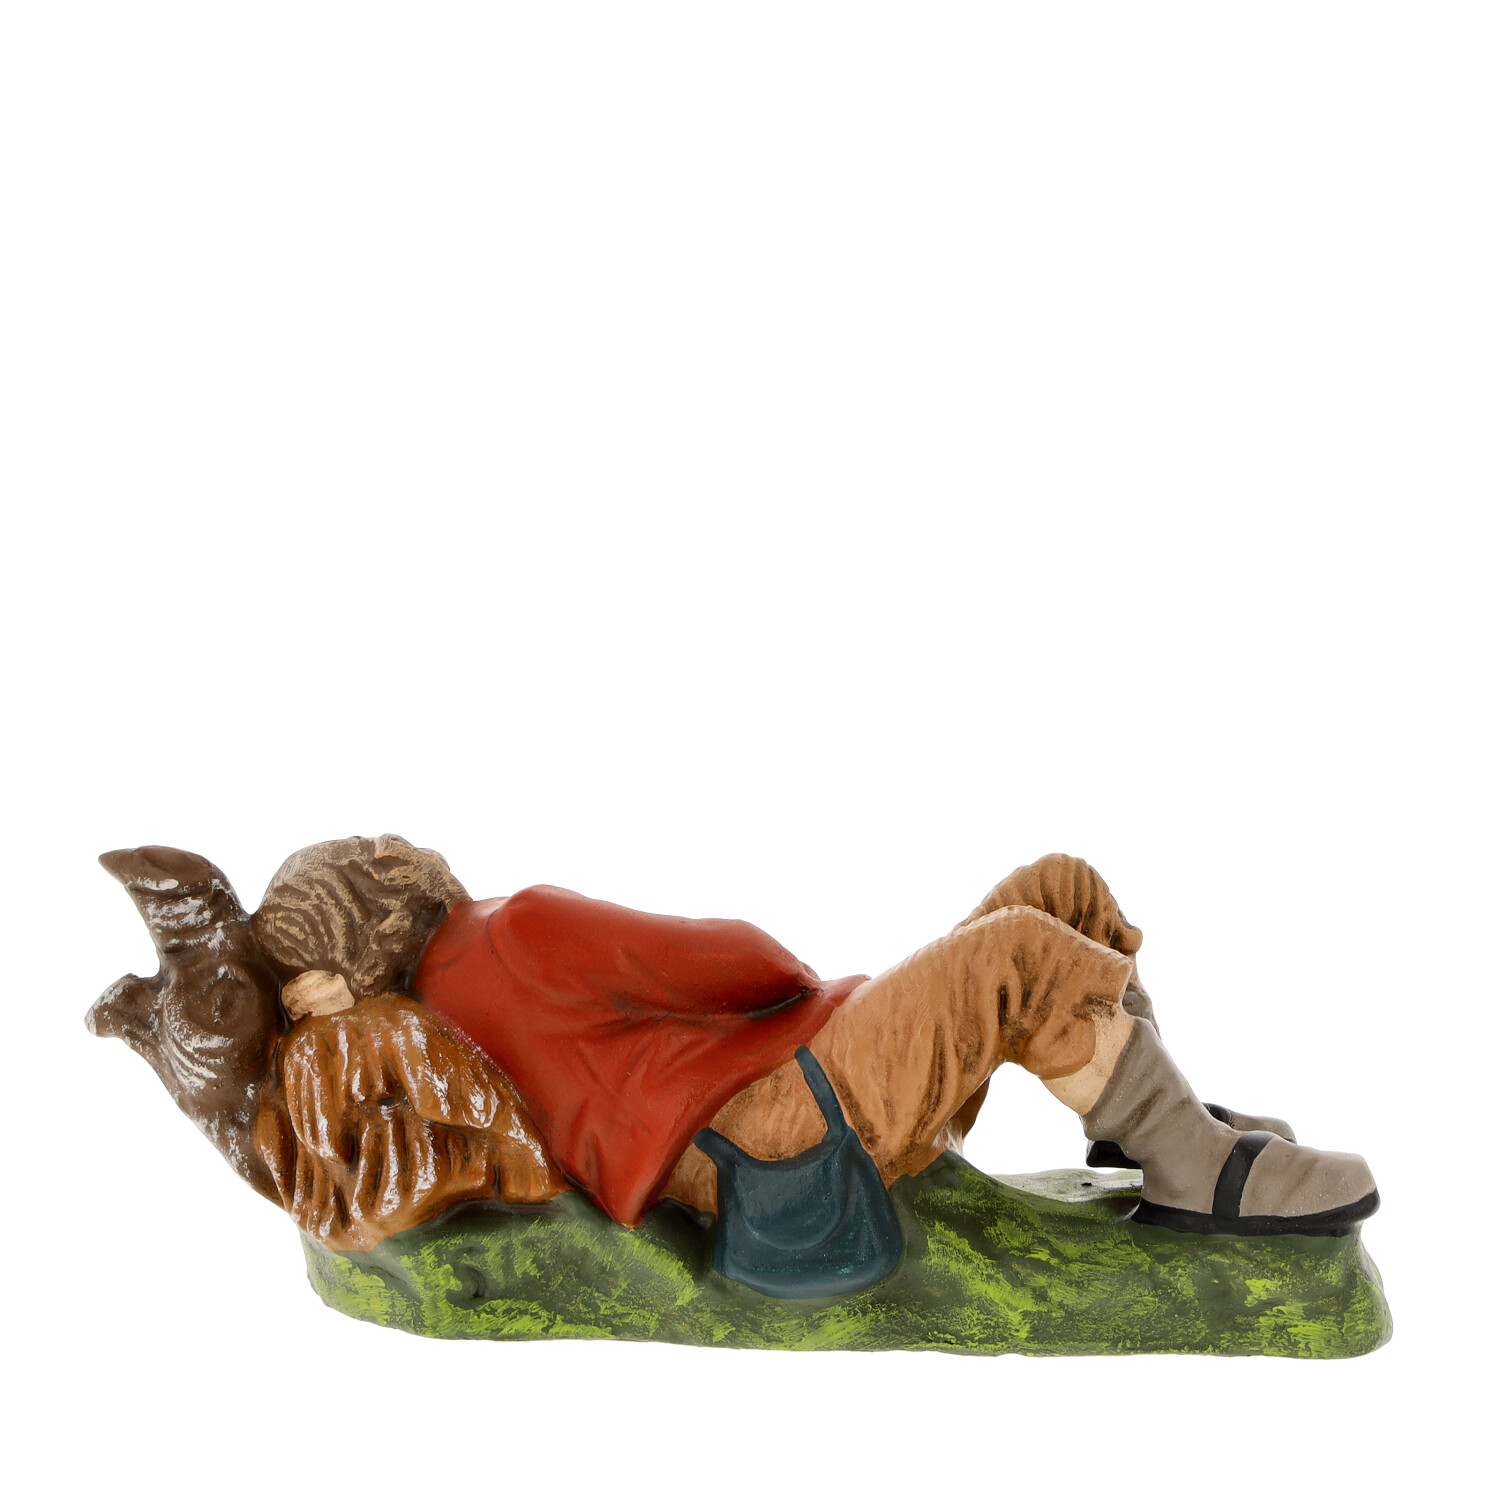 Hirte schlafend, zu 12cm Figuren - Marolin Krippenfigurn made in Germany